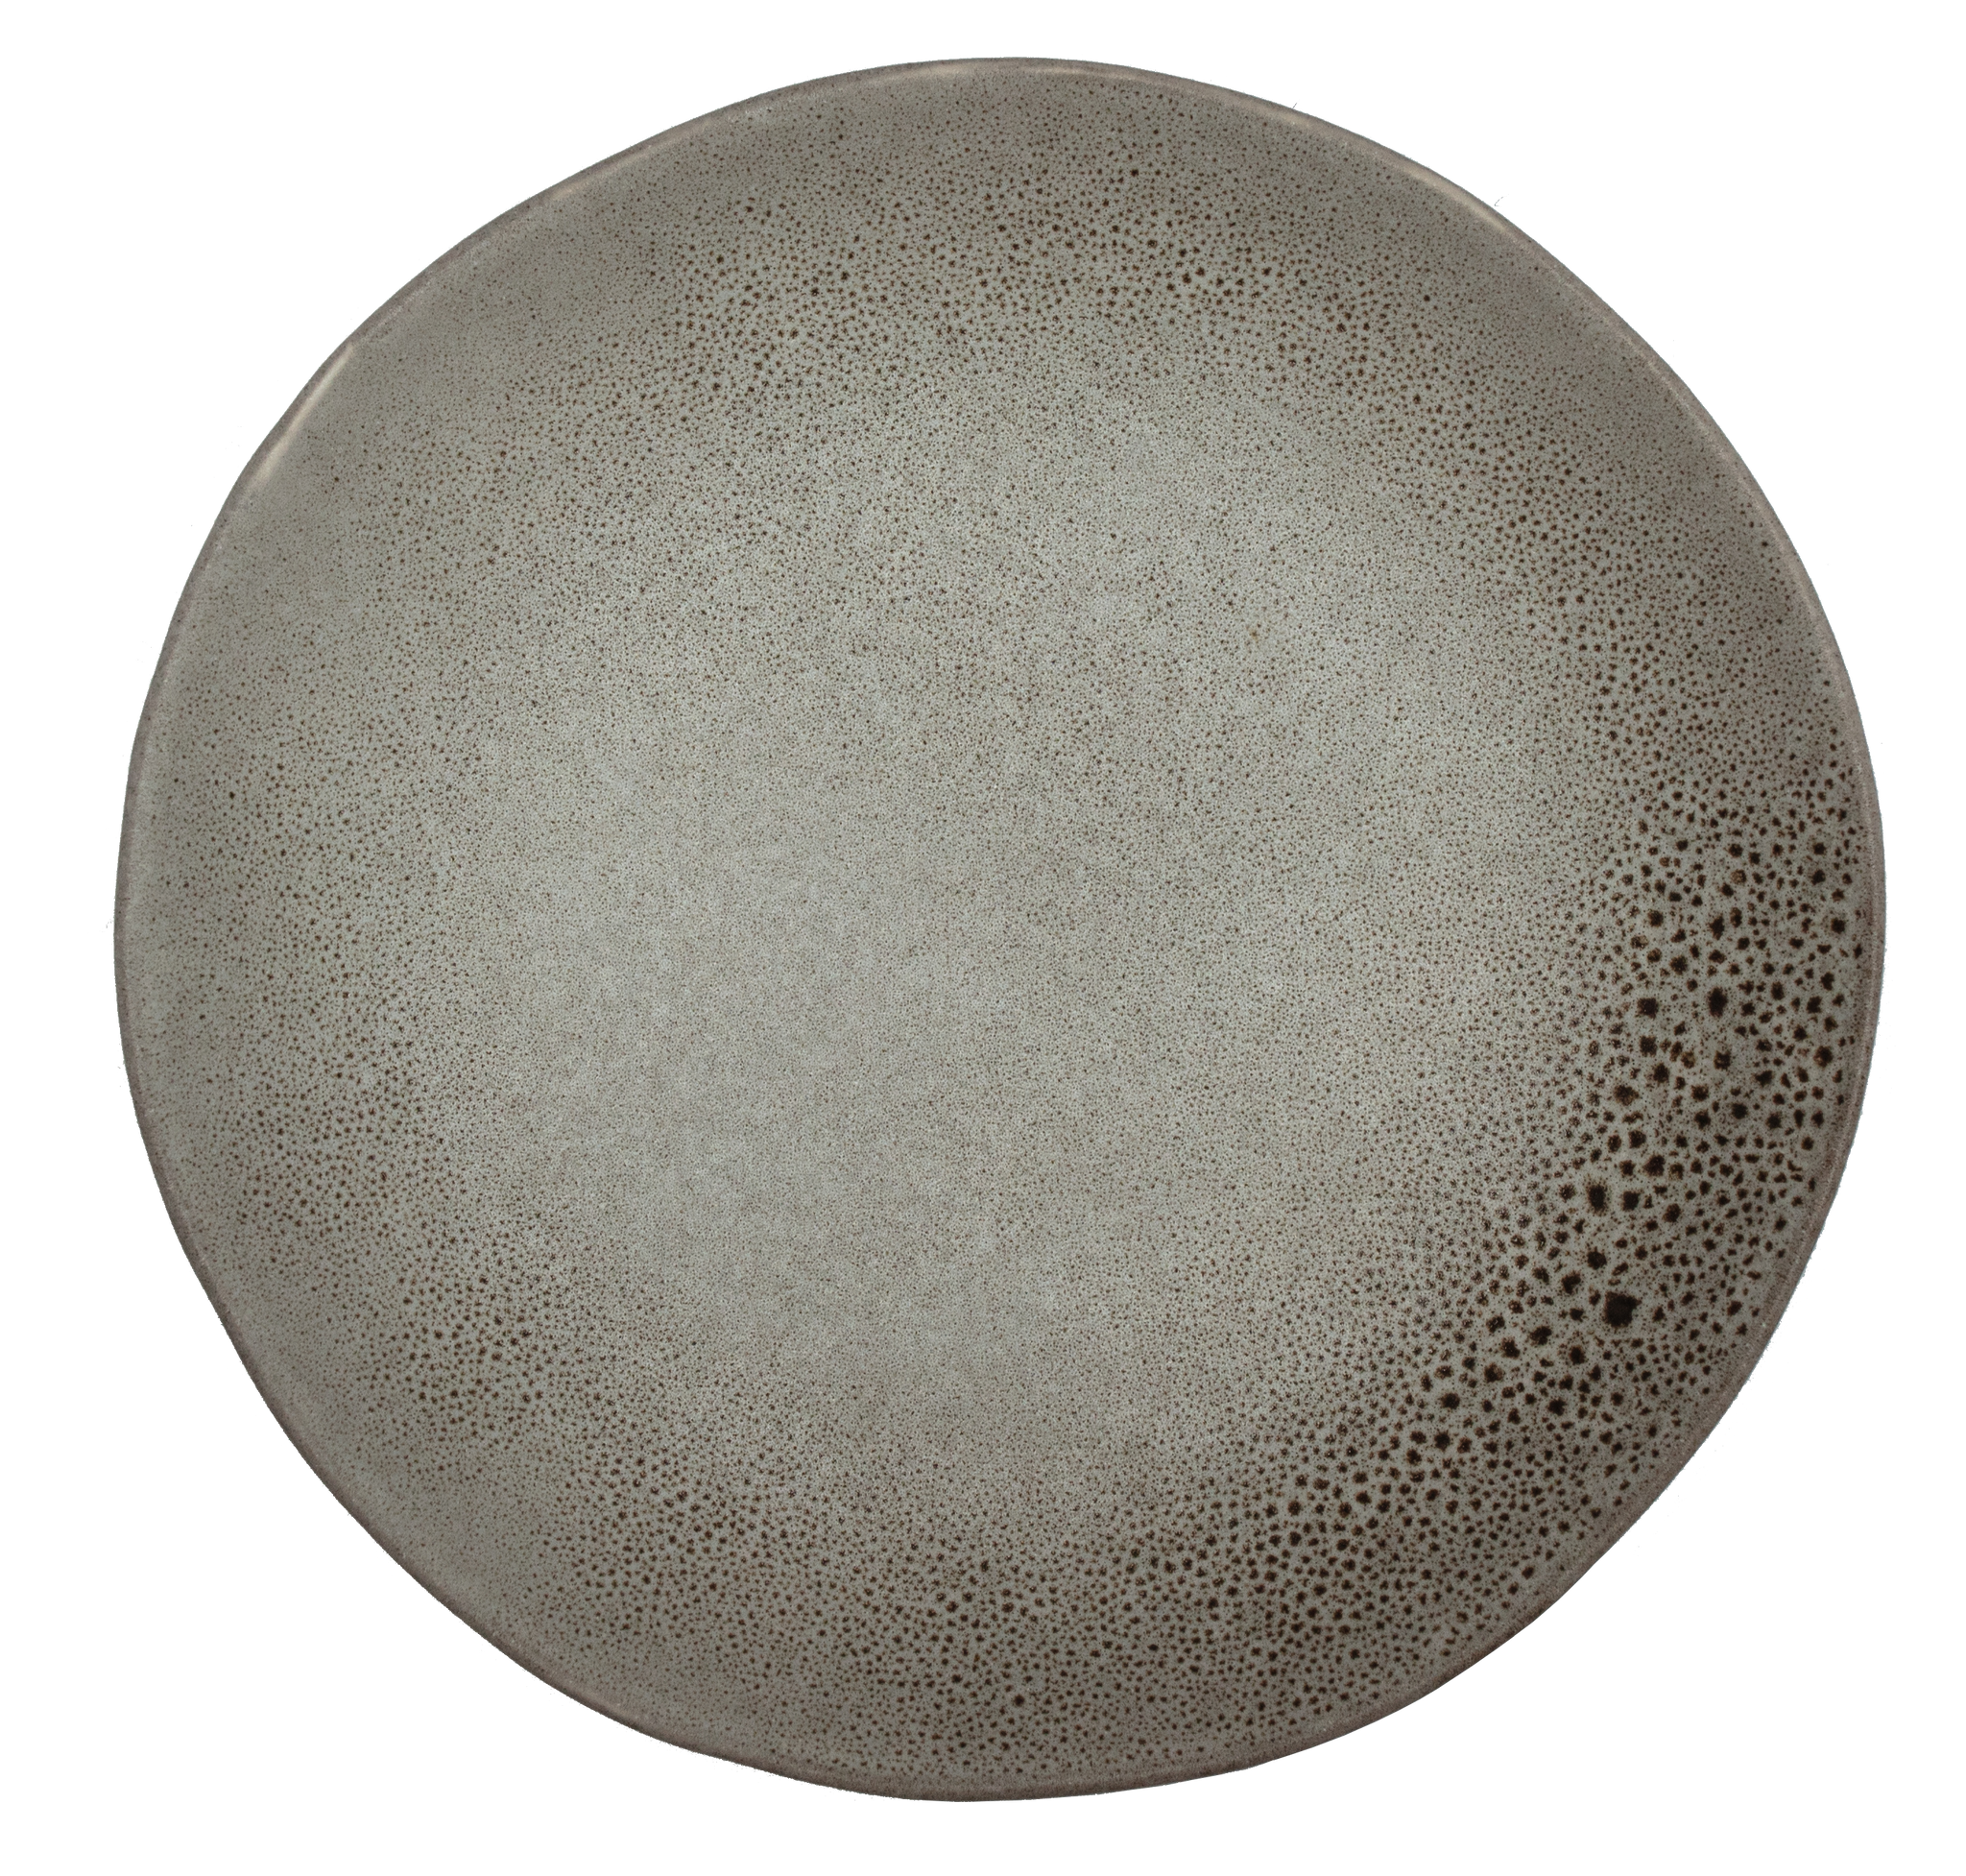 Moonlight Grey Dinner Plate